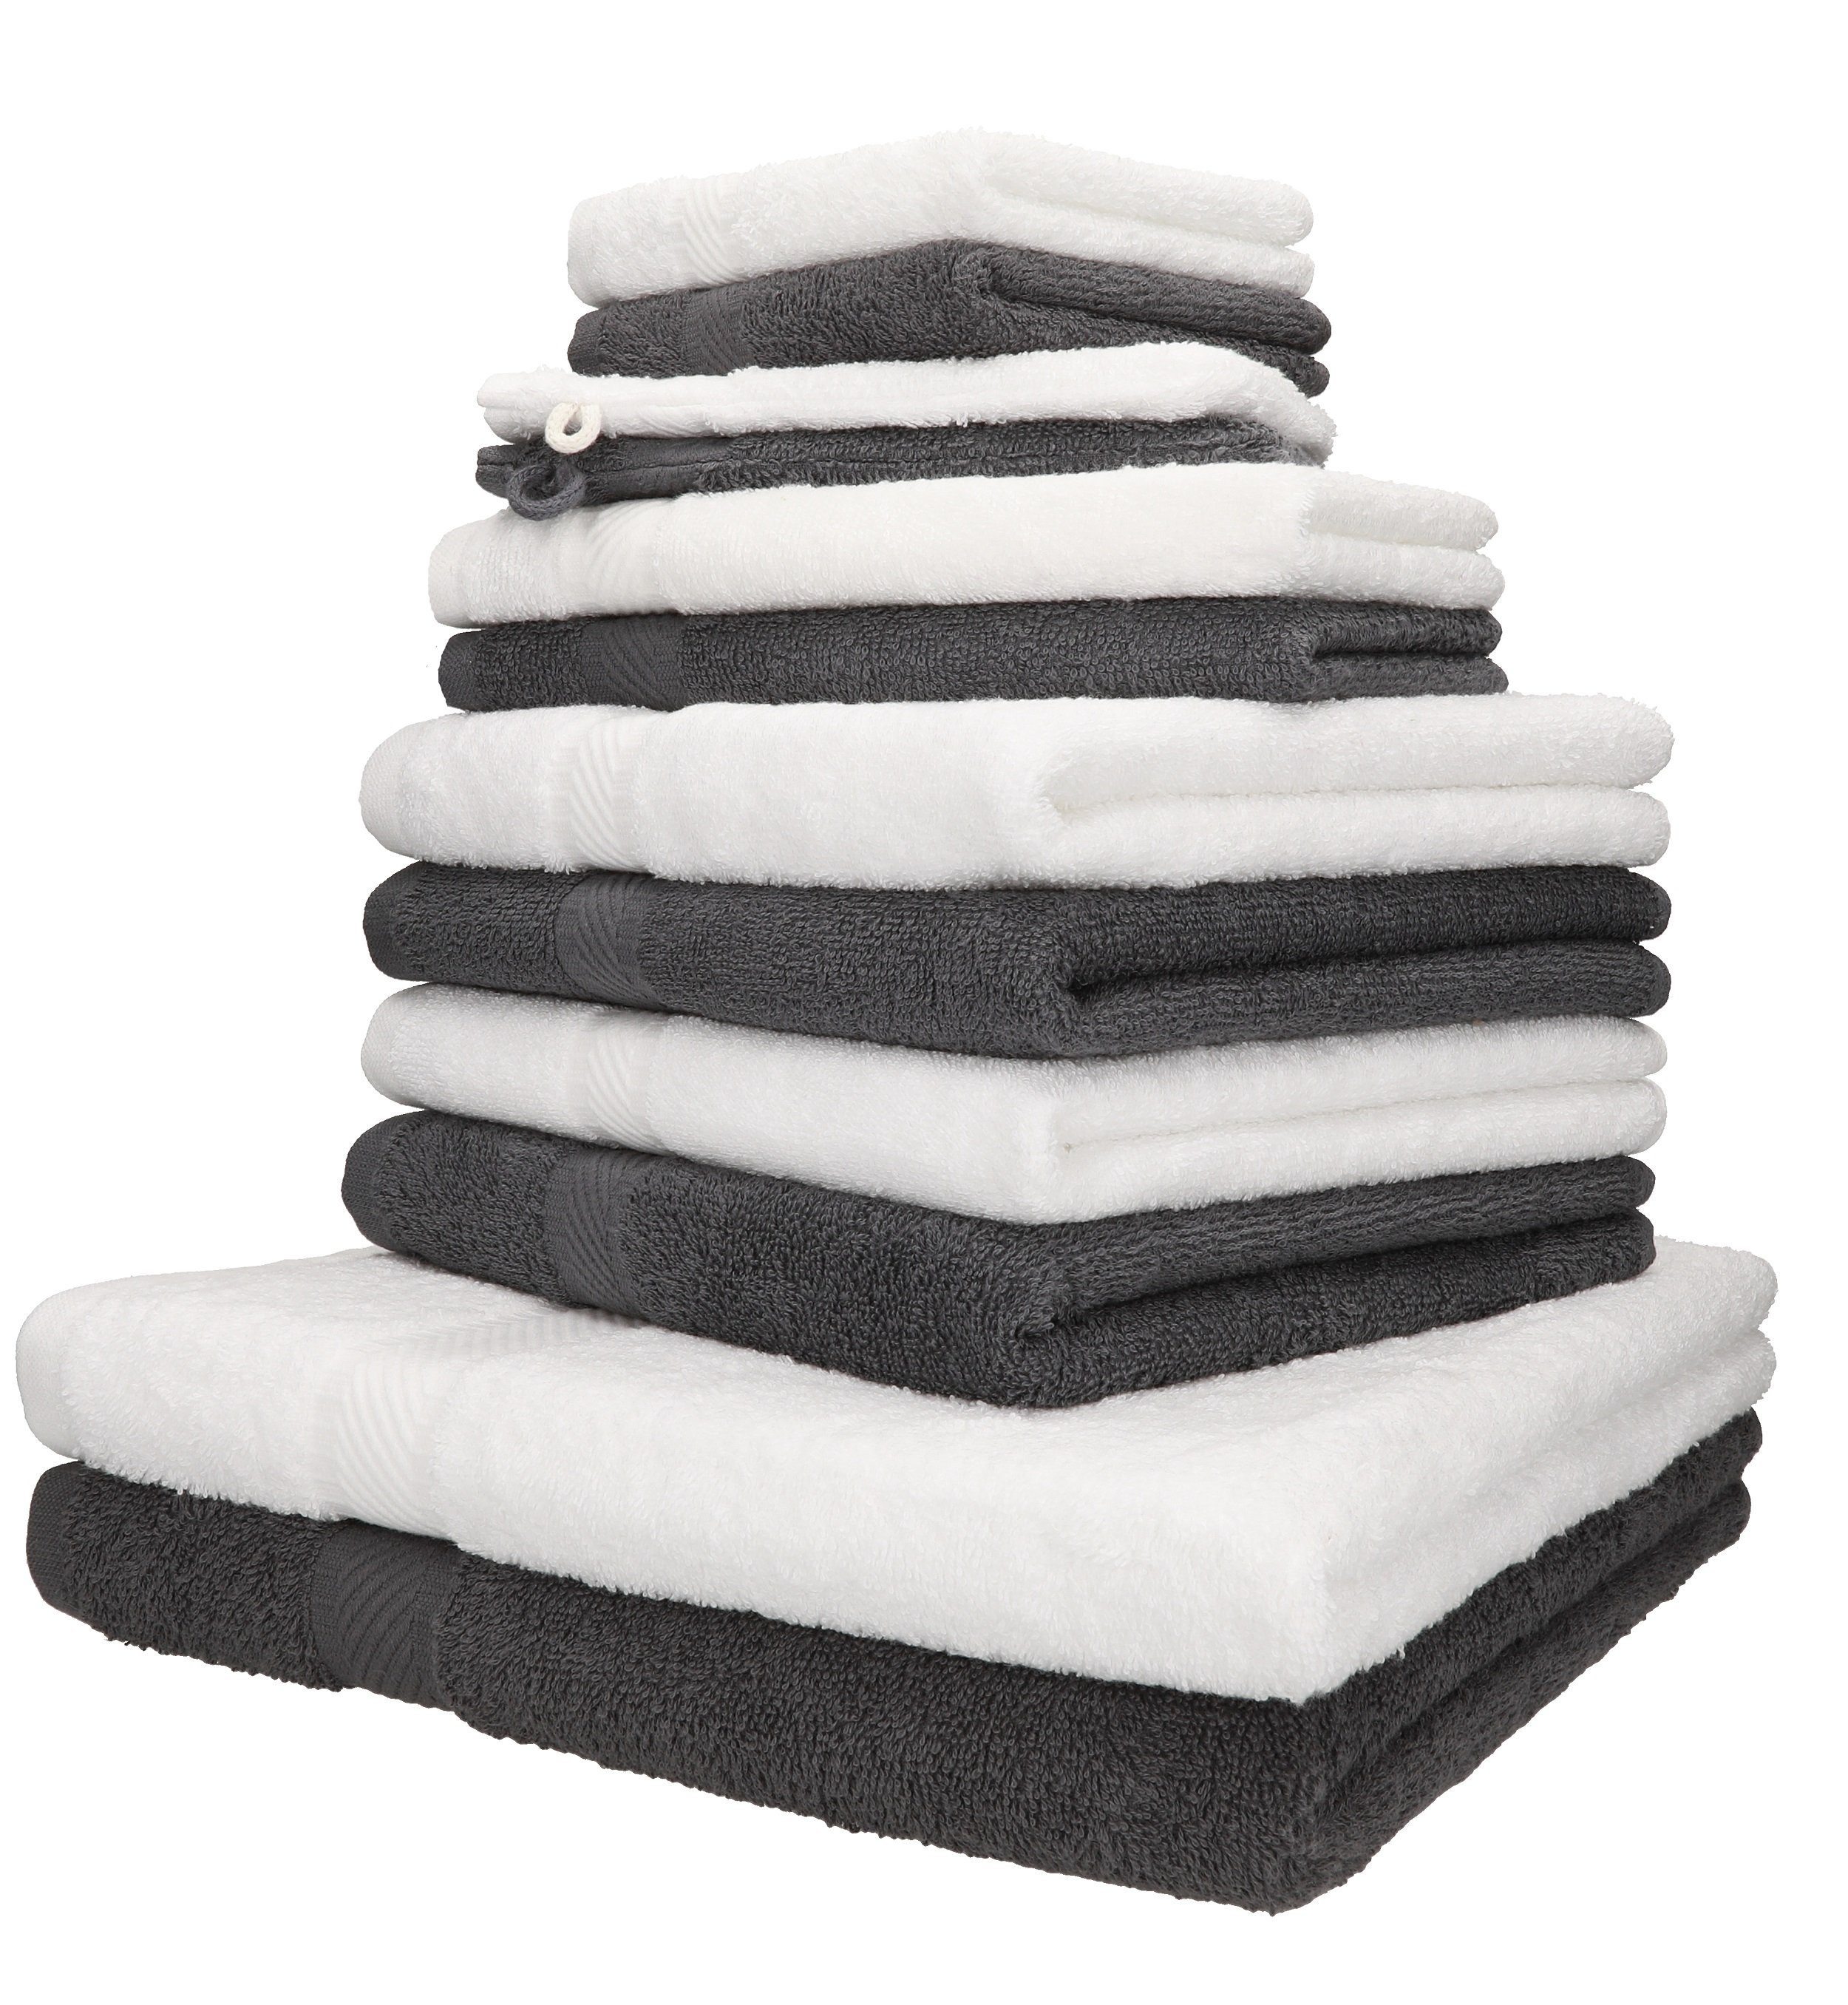 Betz Handtuch Set 12-TLG. Handtuch-Set Palermo 100% Baumwolle 2 Liegetücher 4 Handtücher 2 Gästetücher 2 Seiftücher 2 Waschhandschuhe Farbe anthrazit und weiß, 100% Baumwolle, (12-tlg) | Handtuch-Sets